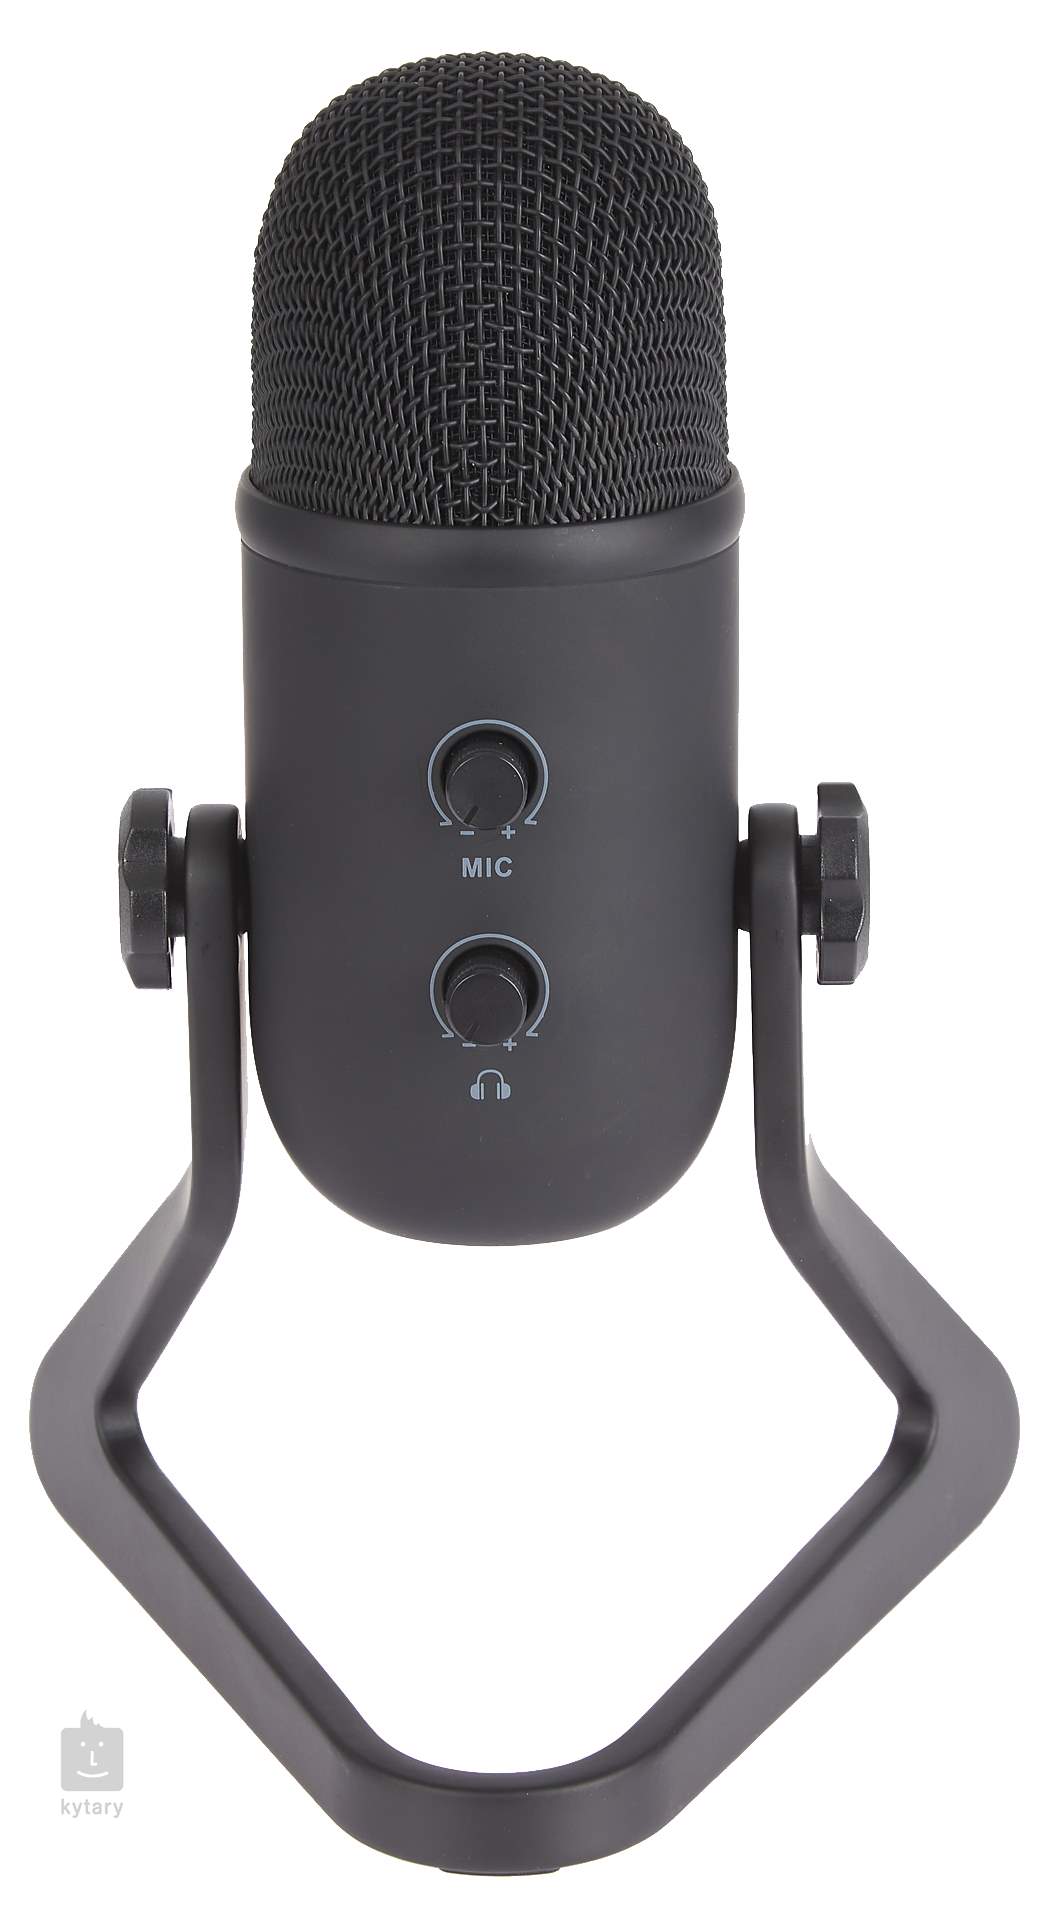 FIFINE USB Microphone Professional Studio PC Microphone à Condensateur pour Portable Ordinateur Rouge K669 